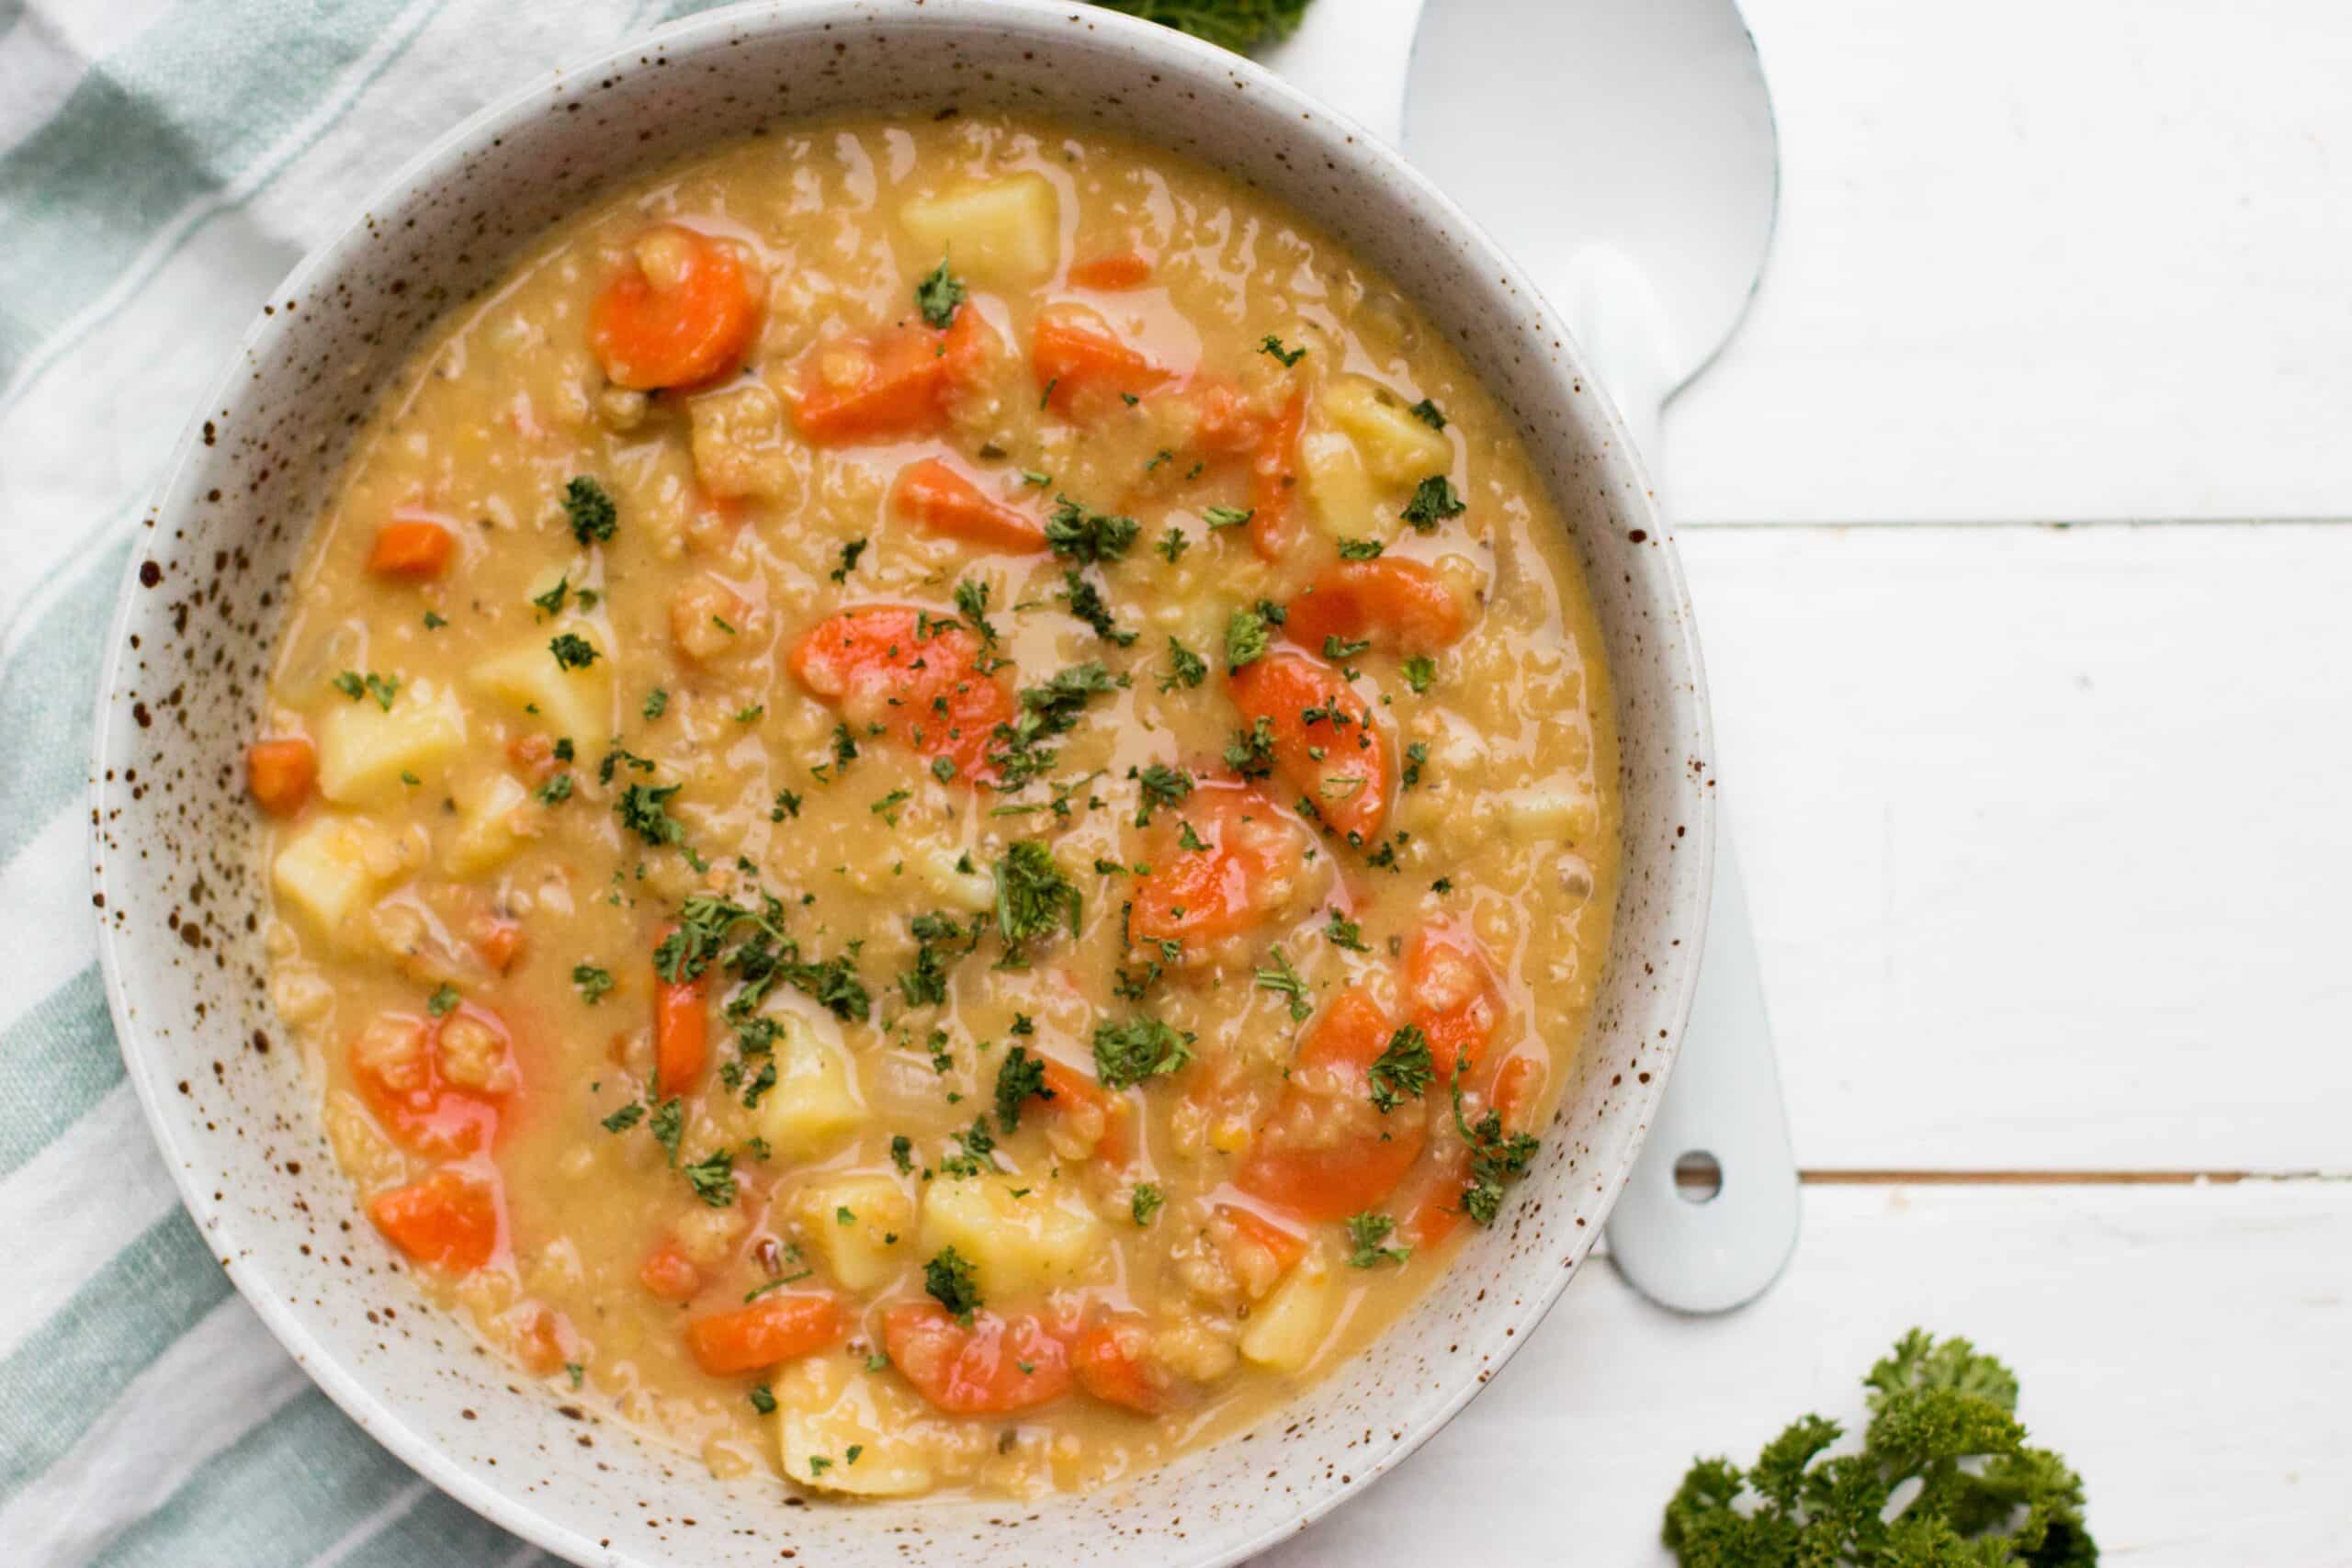 soep linzen wortel maaltijd gezond veggie 3